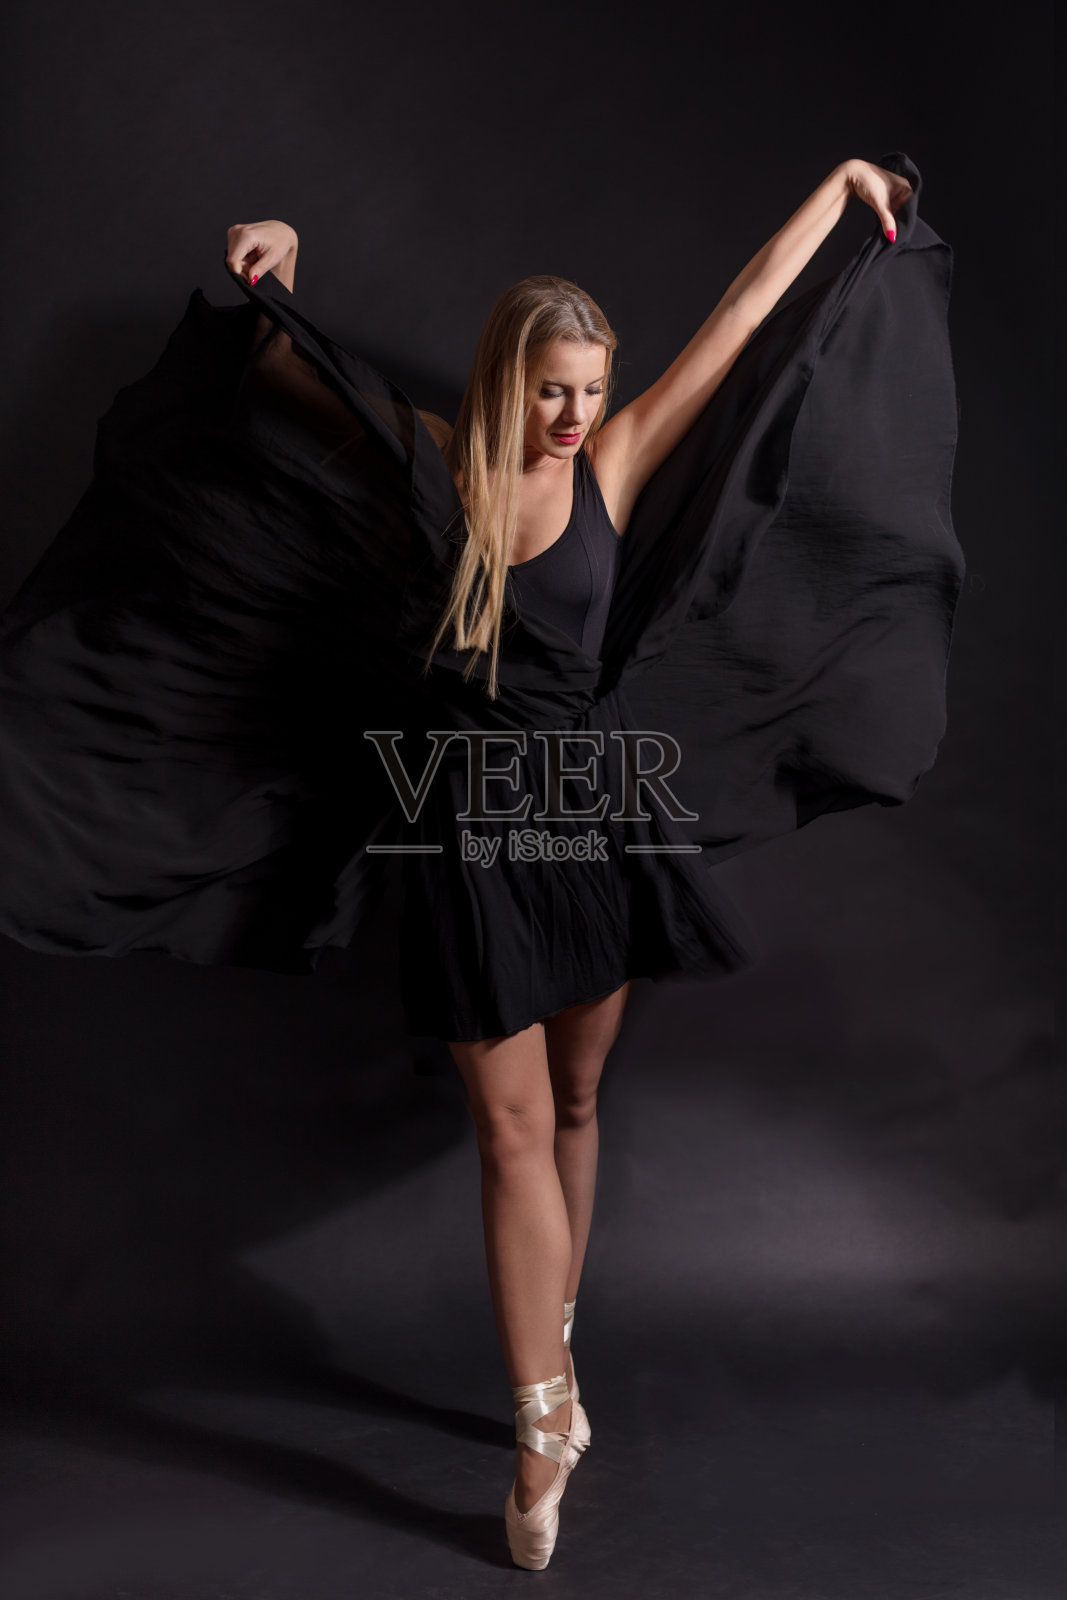 女芭蕾舞者在黑色背景下穿着黑色裙子跳舞照片摄影图片